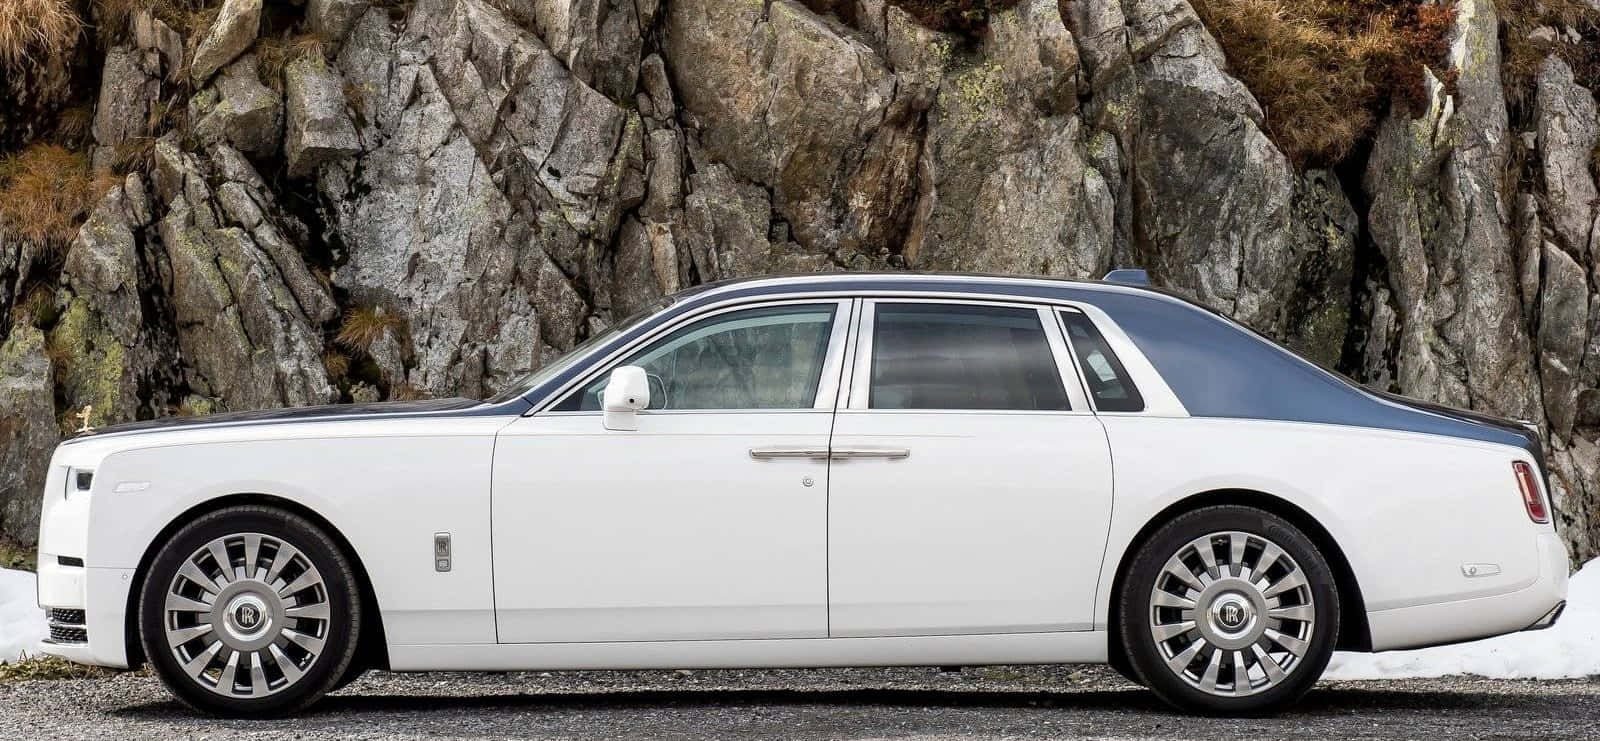 Luxurious Rolls Royce Phantom In Majestic Travels Wallpaper